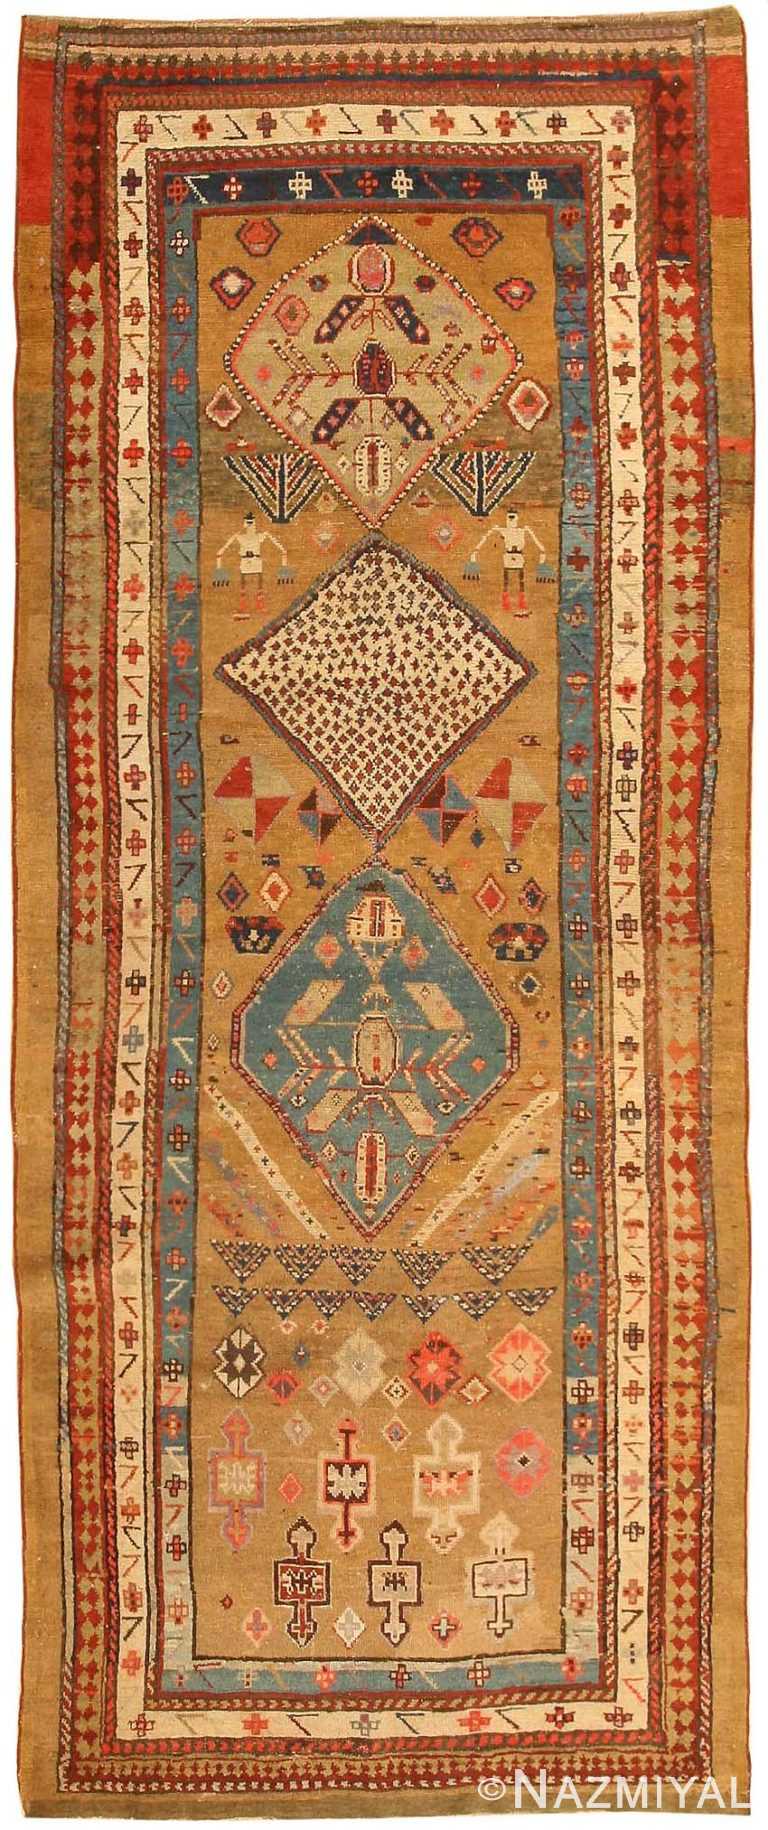 Antique Bakshaish Persian Rugs 43237 Detail/Large View